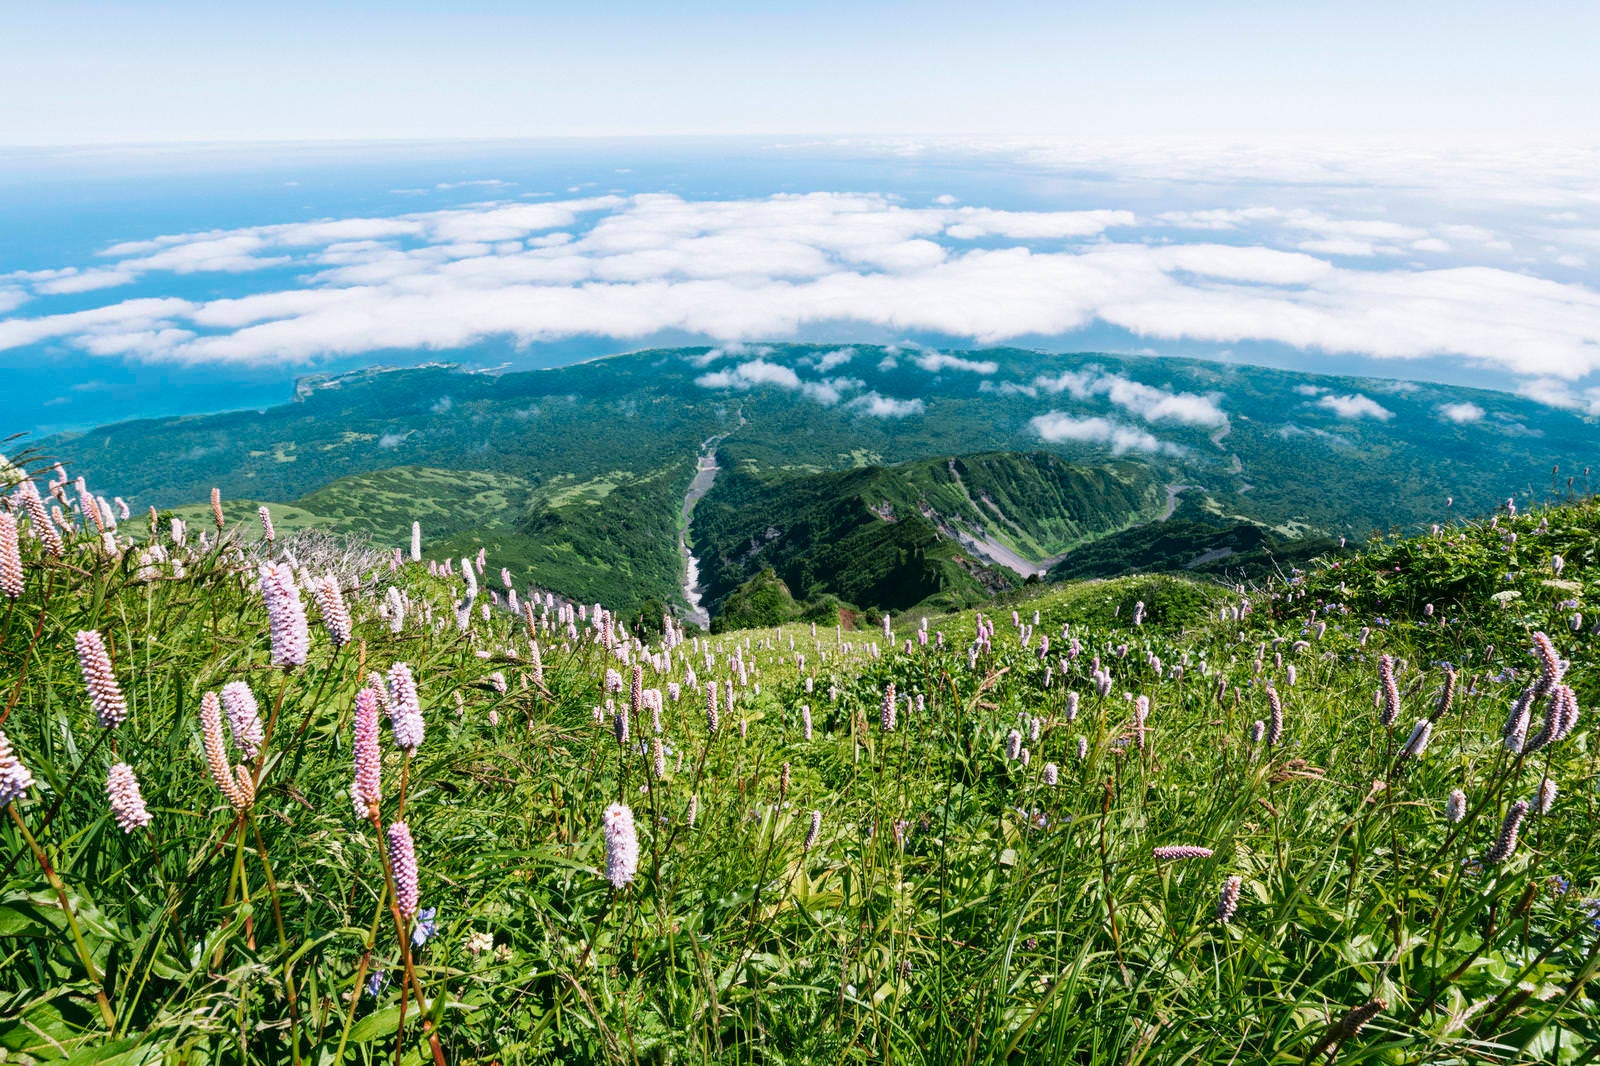 「イブキノトラオが咲き乱れる利尻山南斜面」の写真